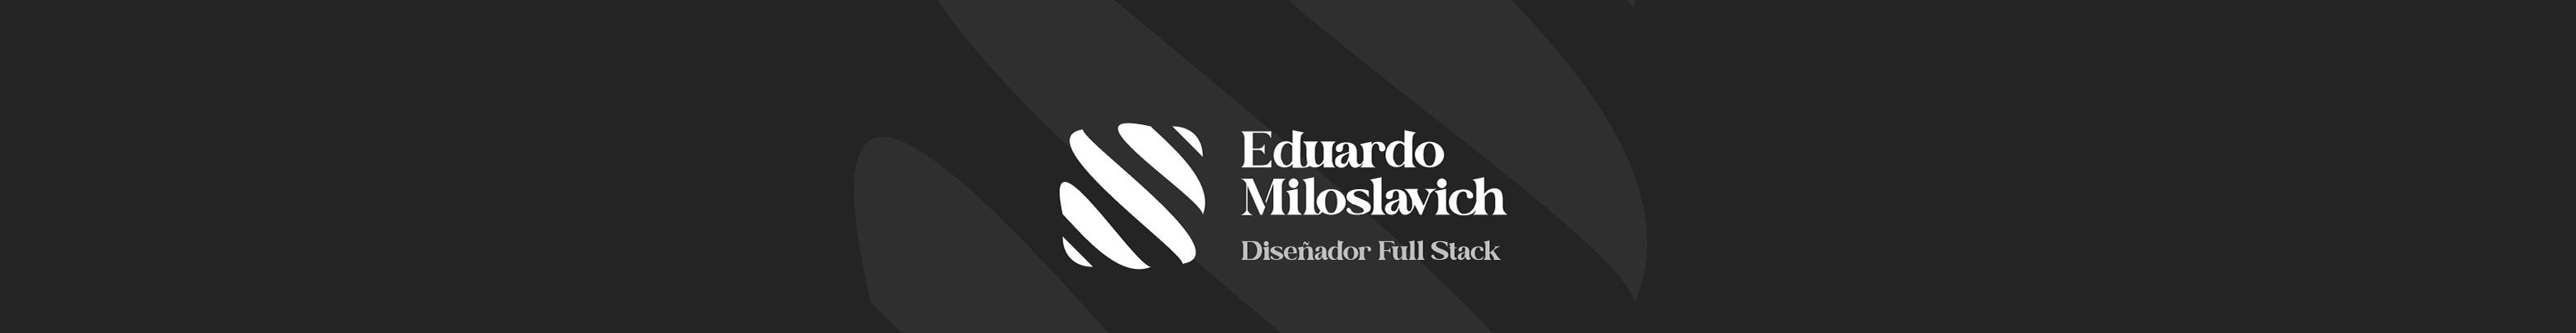 Eduardo Miloslavich's profile banner